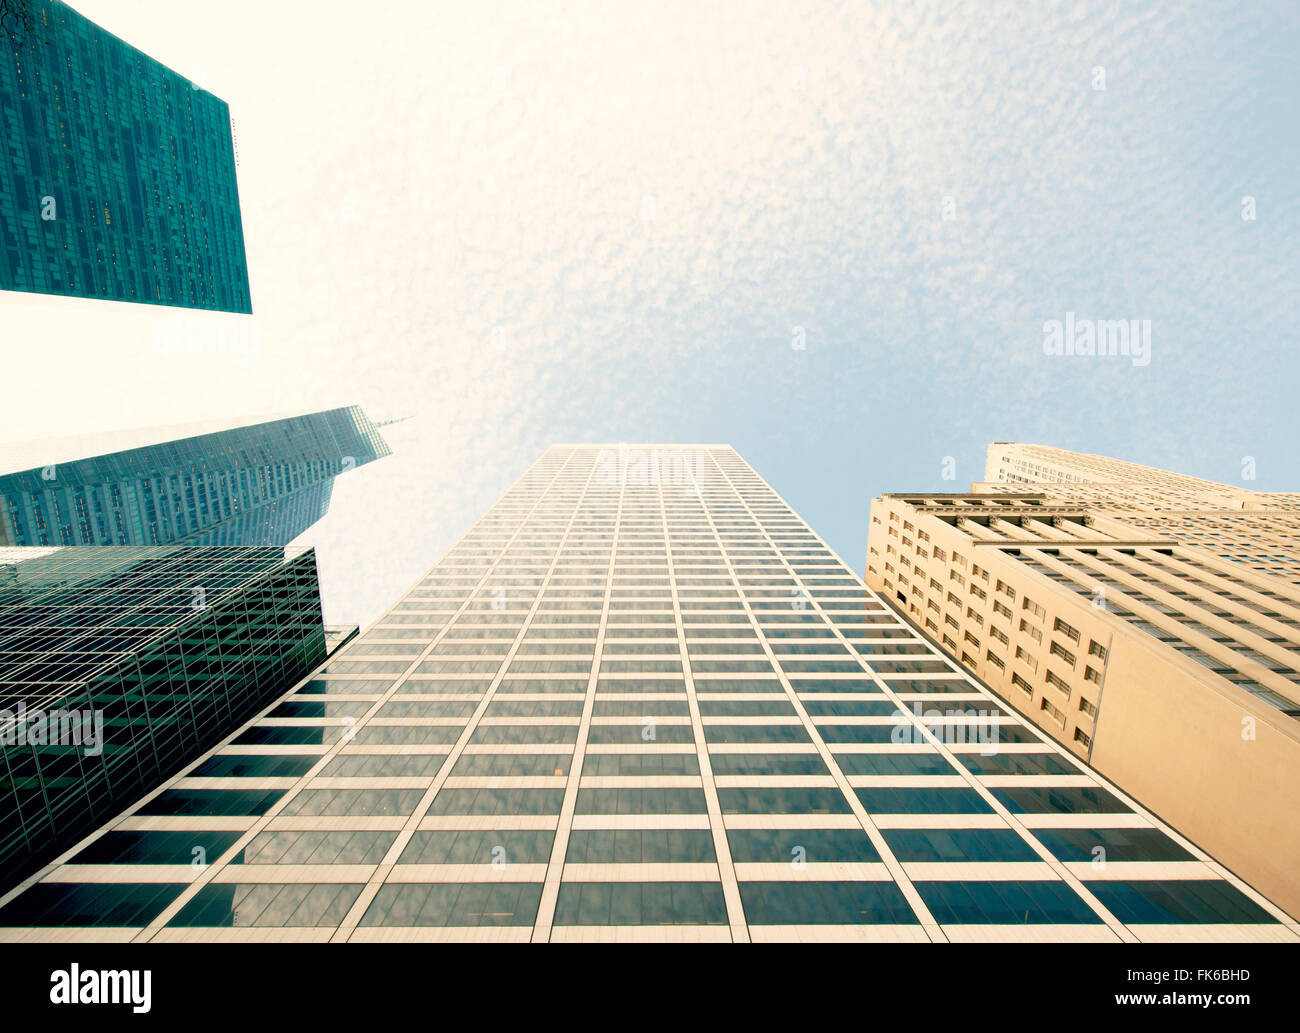 Résumé des bâtiments gratte-ciel moderne, New York City, États-Unis d'Amérique, Amérique du Nord Banque D'Images